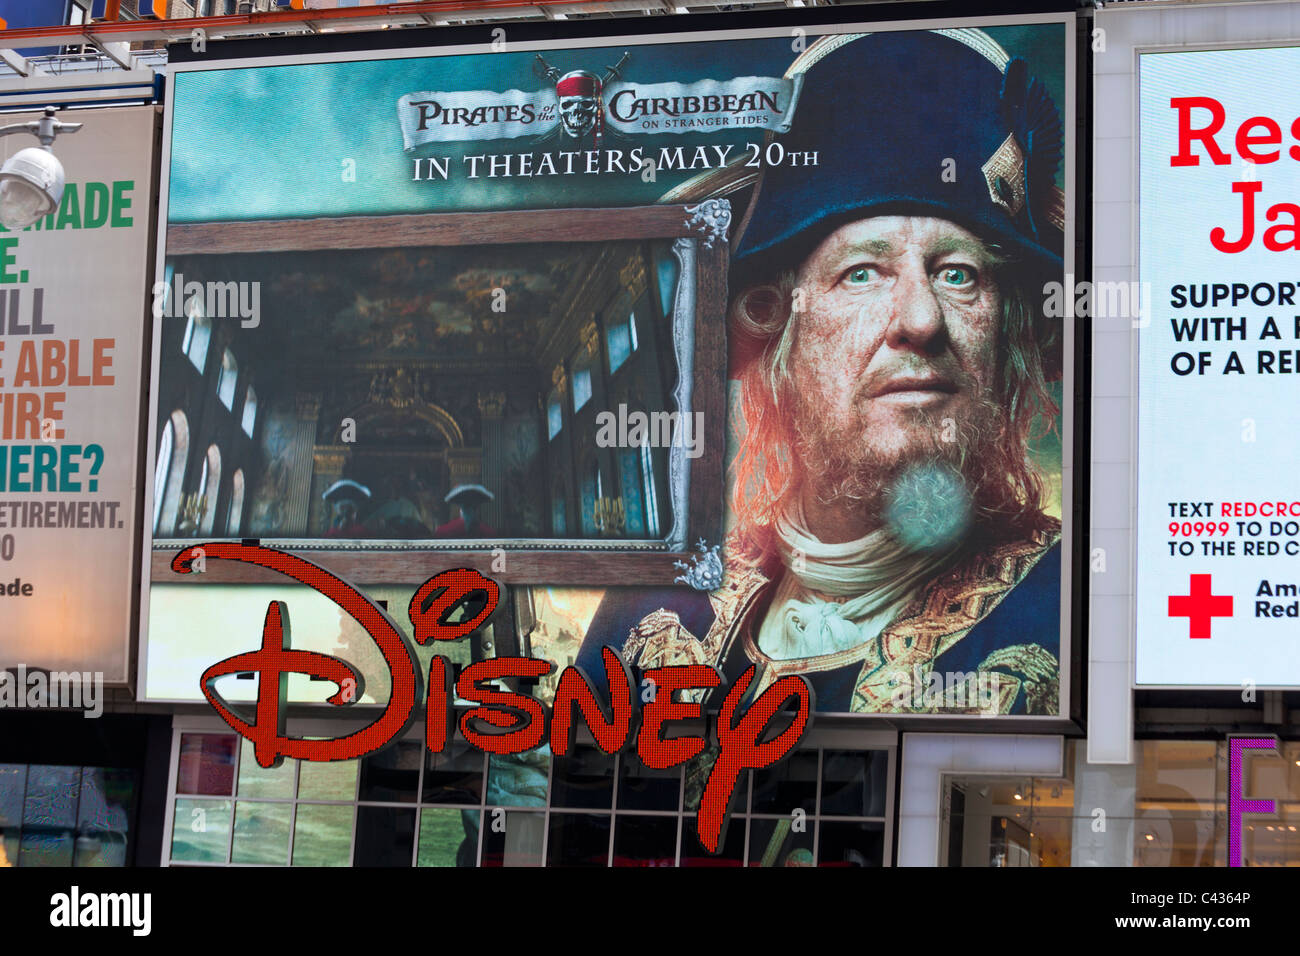 Werbung für Piraten der Karibik On Stranger Tides, Times Square, Manhattan, New York City, USA Stockfoto